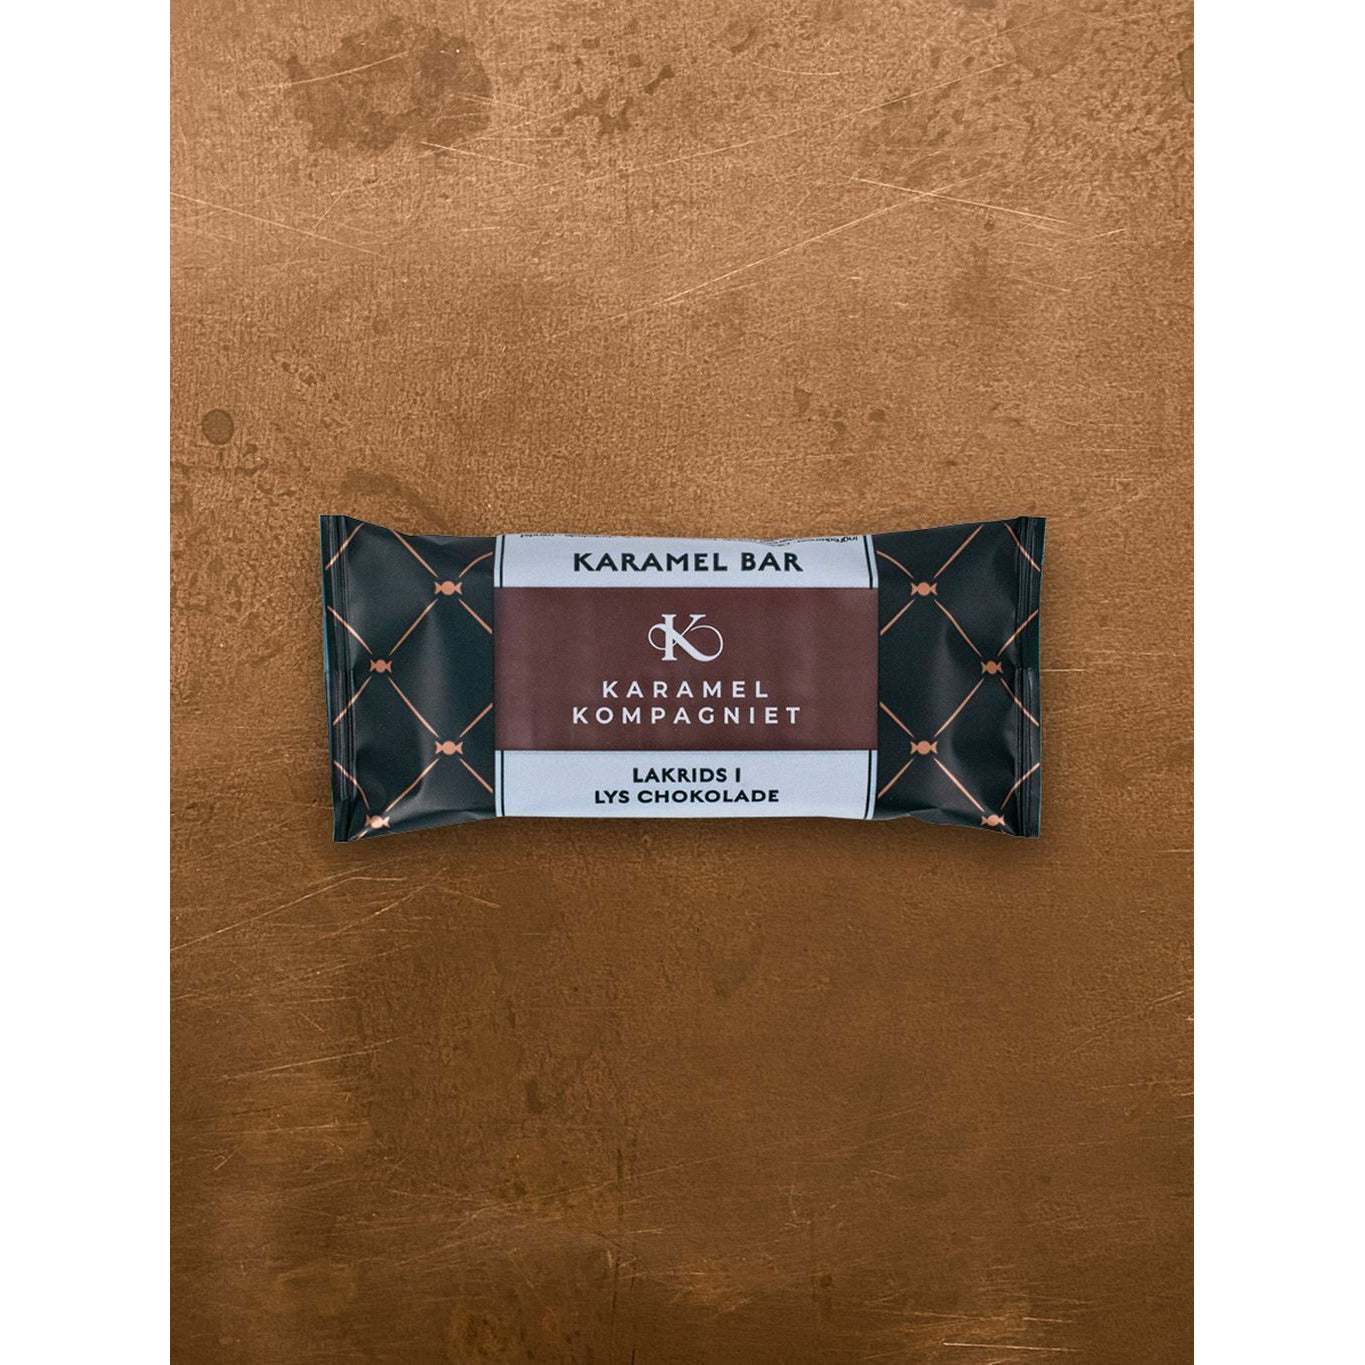 Karamel Kompagniet Karamellstång, lakrits i lätt choklad 50g